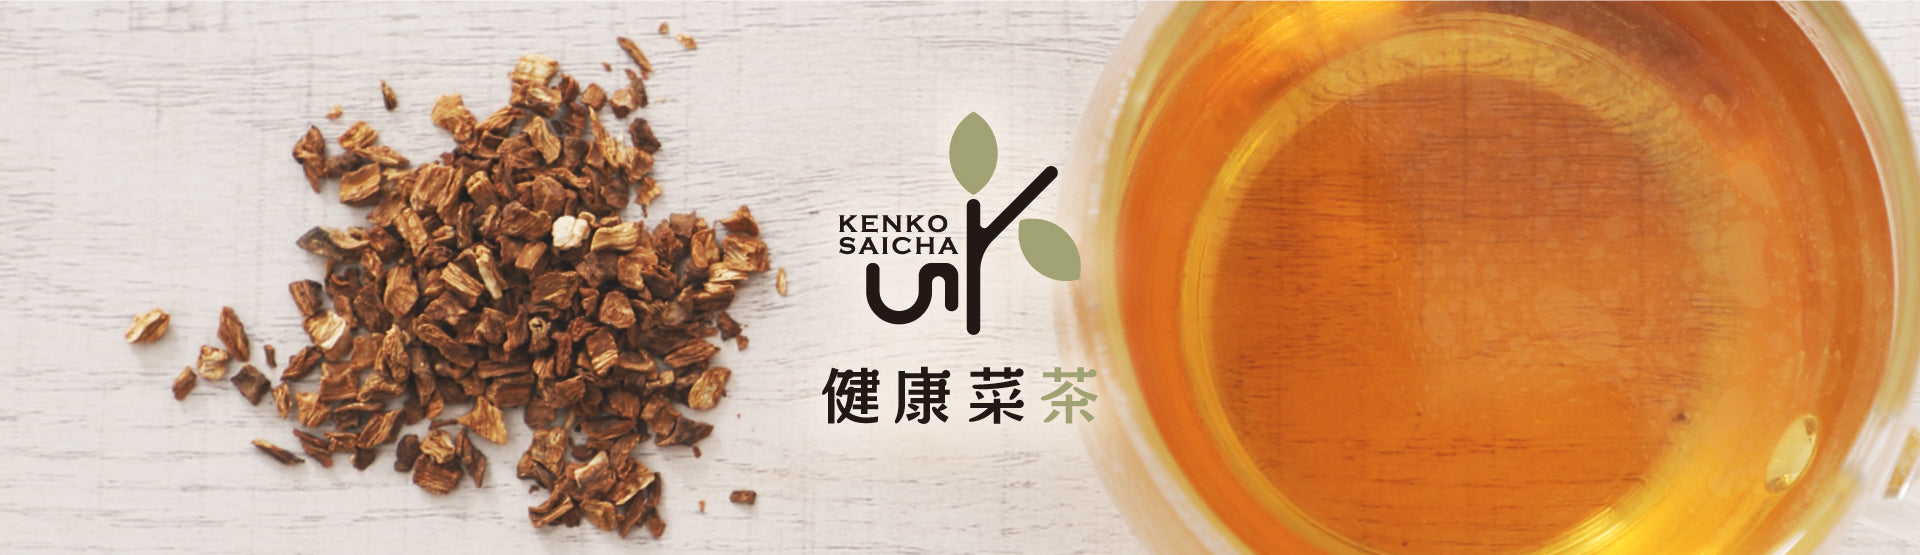 国産素材で栄養たっぷりな健康菜茶の健康茶